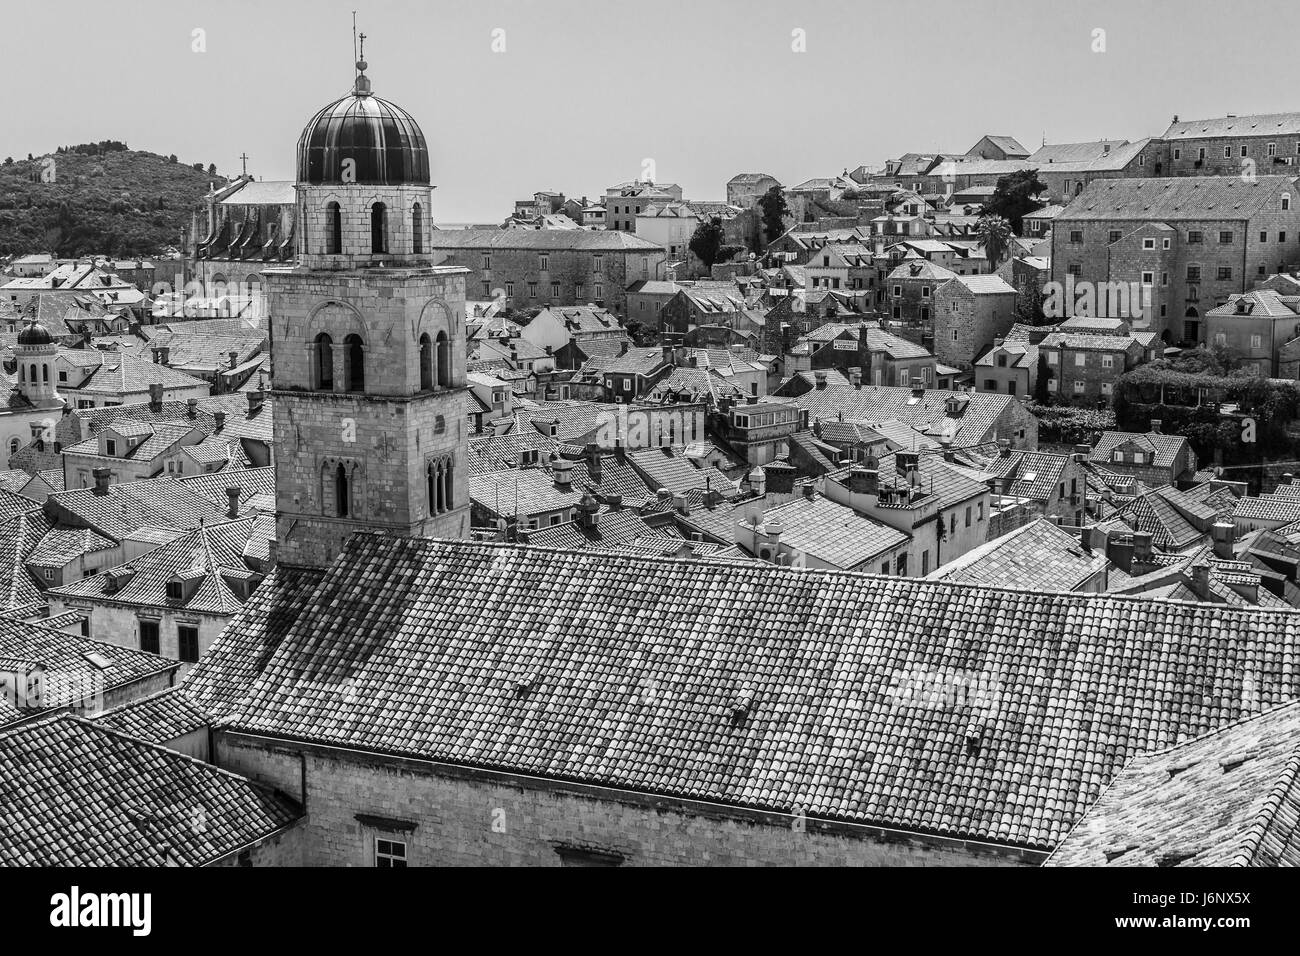 Une image monochrome de l'église franciscaine et le monastère de la vieille ville de Dubrovnik - enregistrée au début de la saison des vacances 2017 dans le Sud Banque D'Images